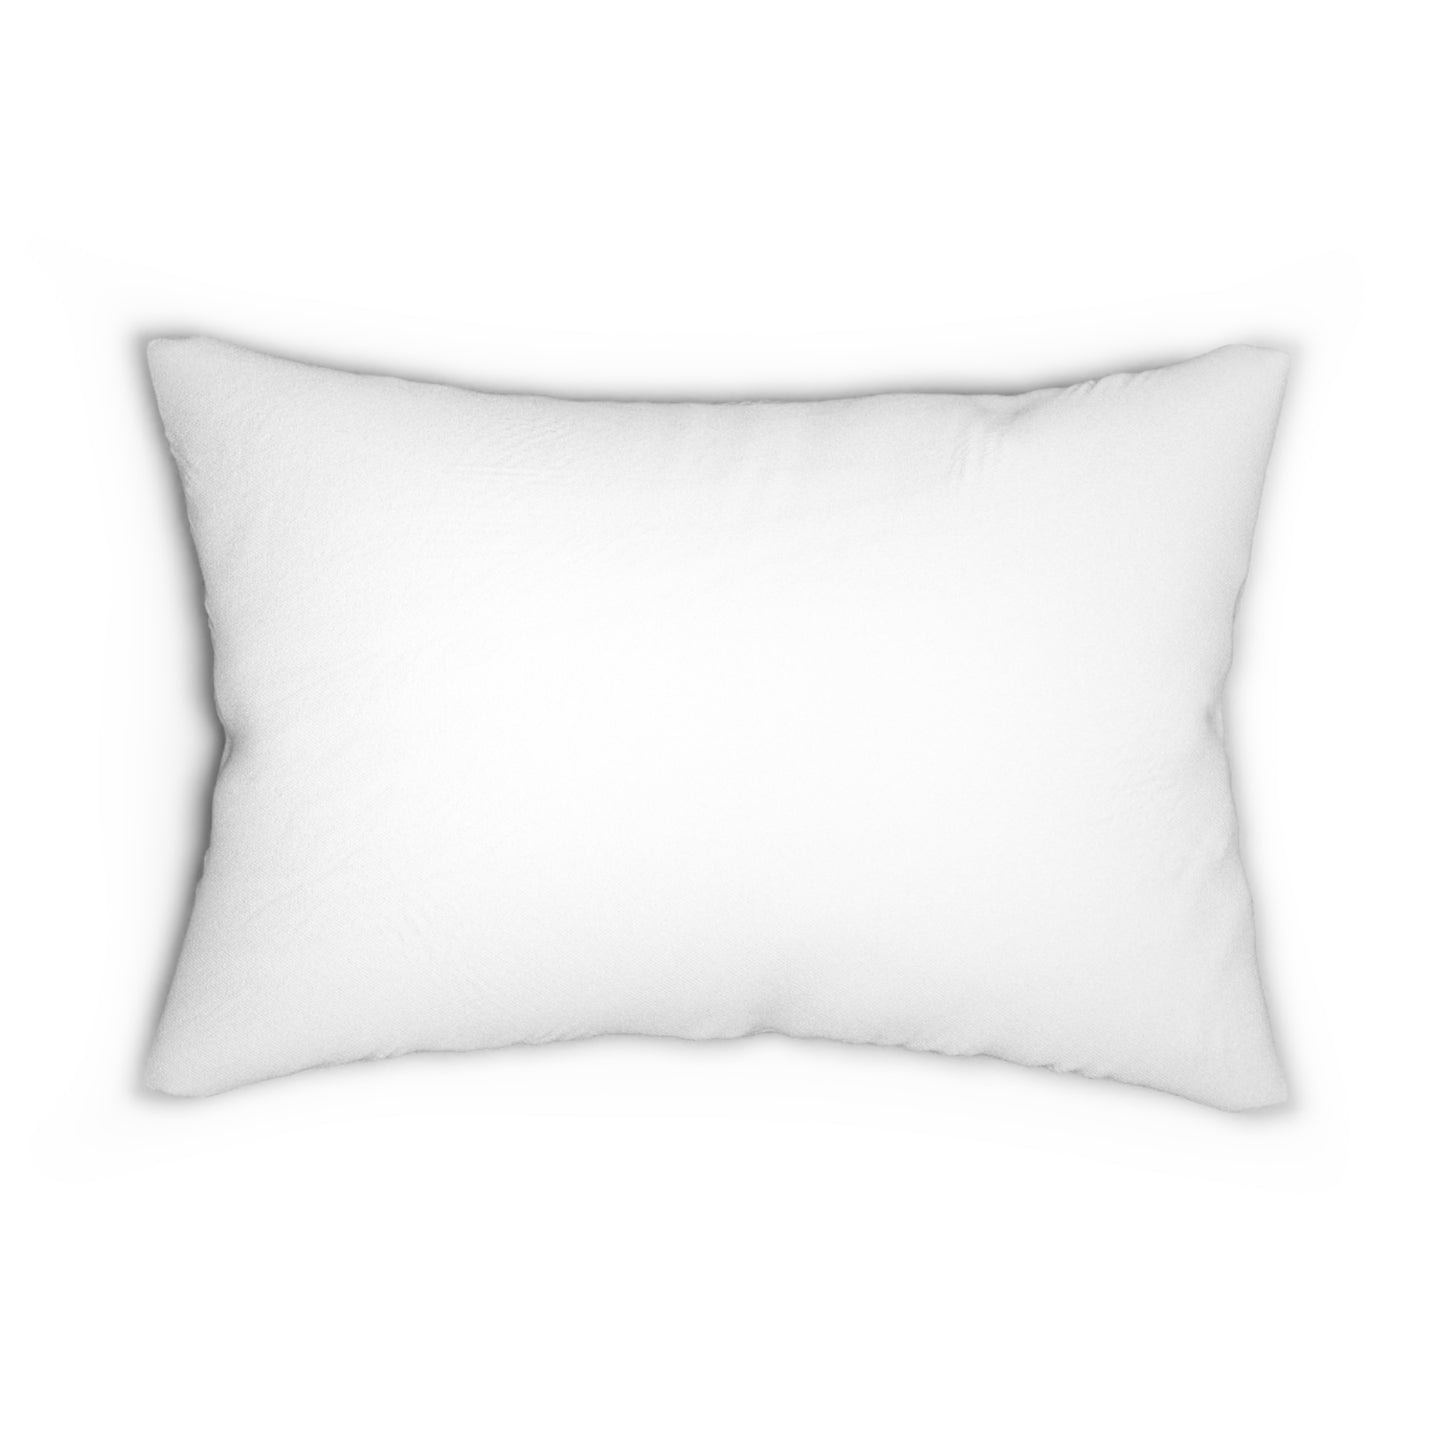 Booktrovert Definition - Lumbar Pillow